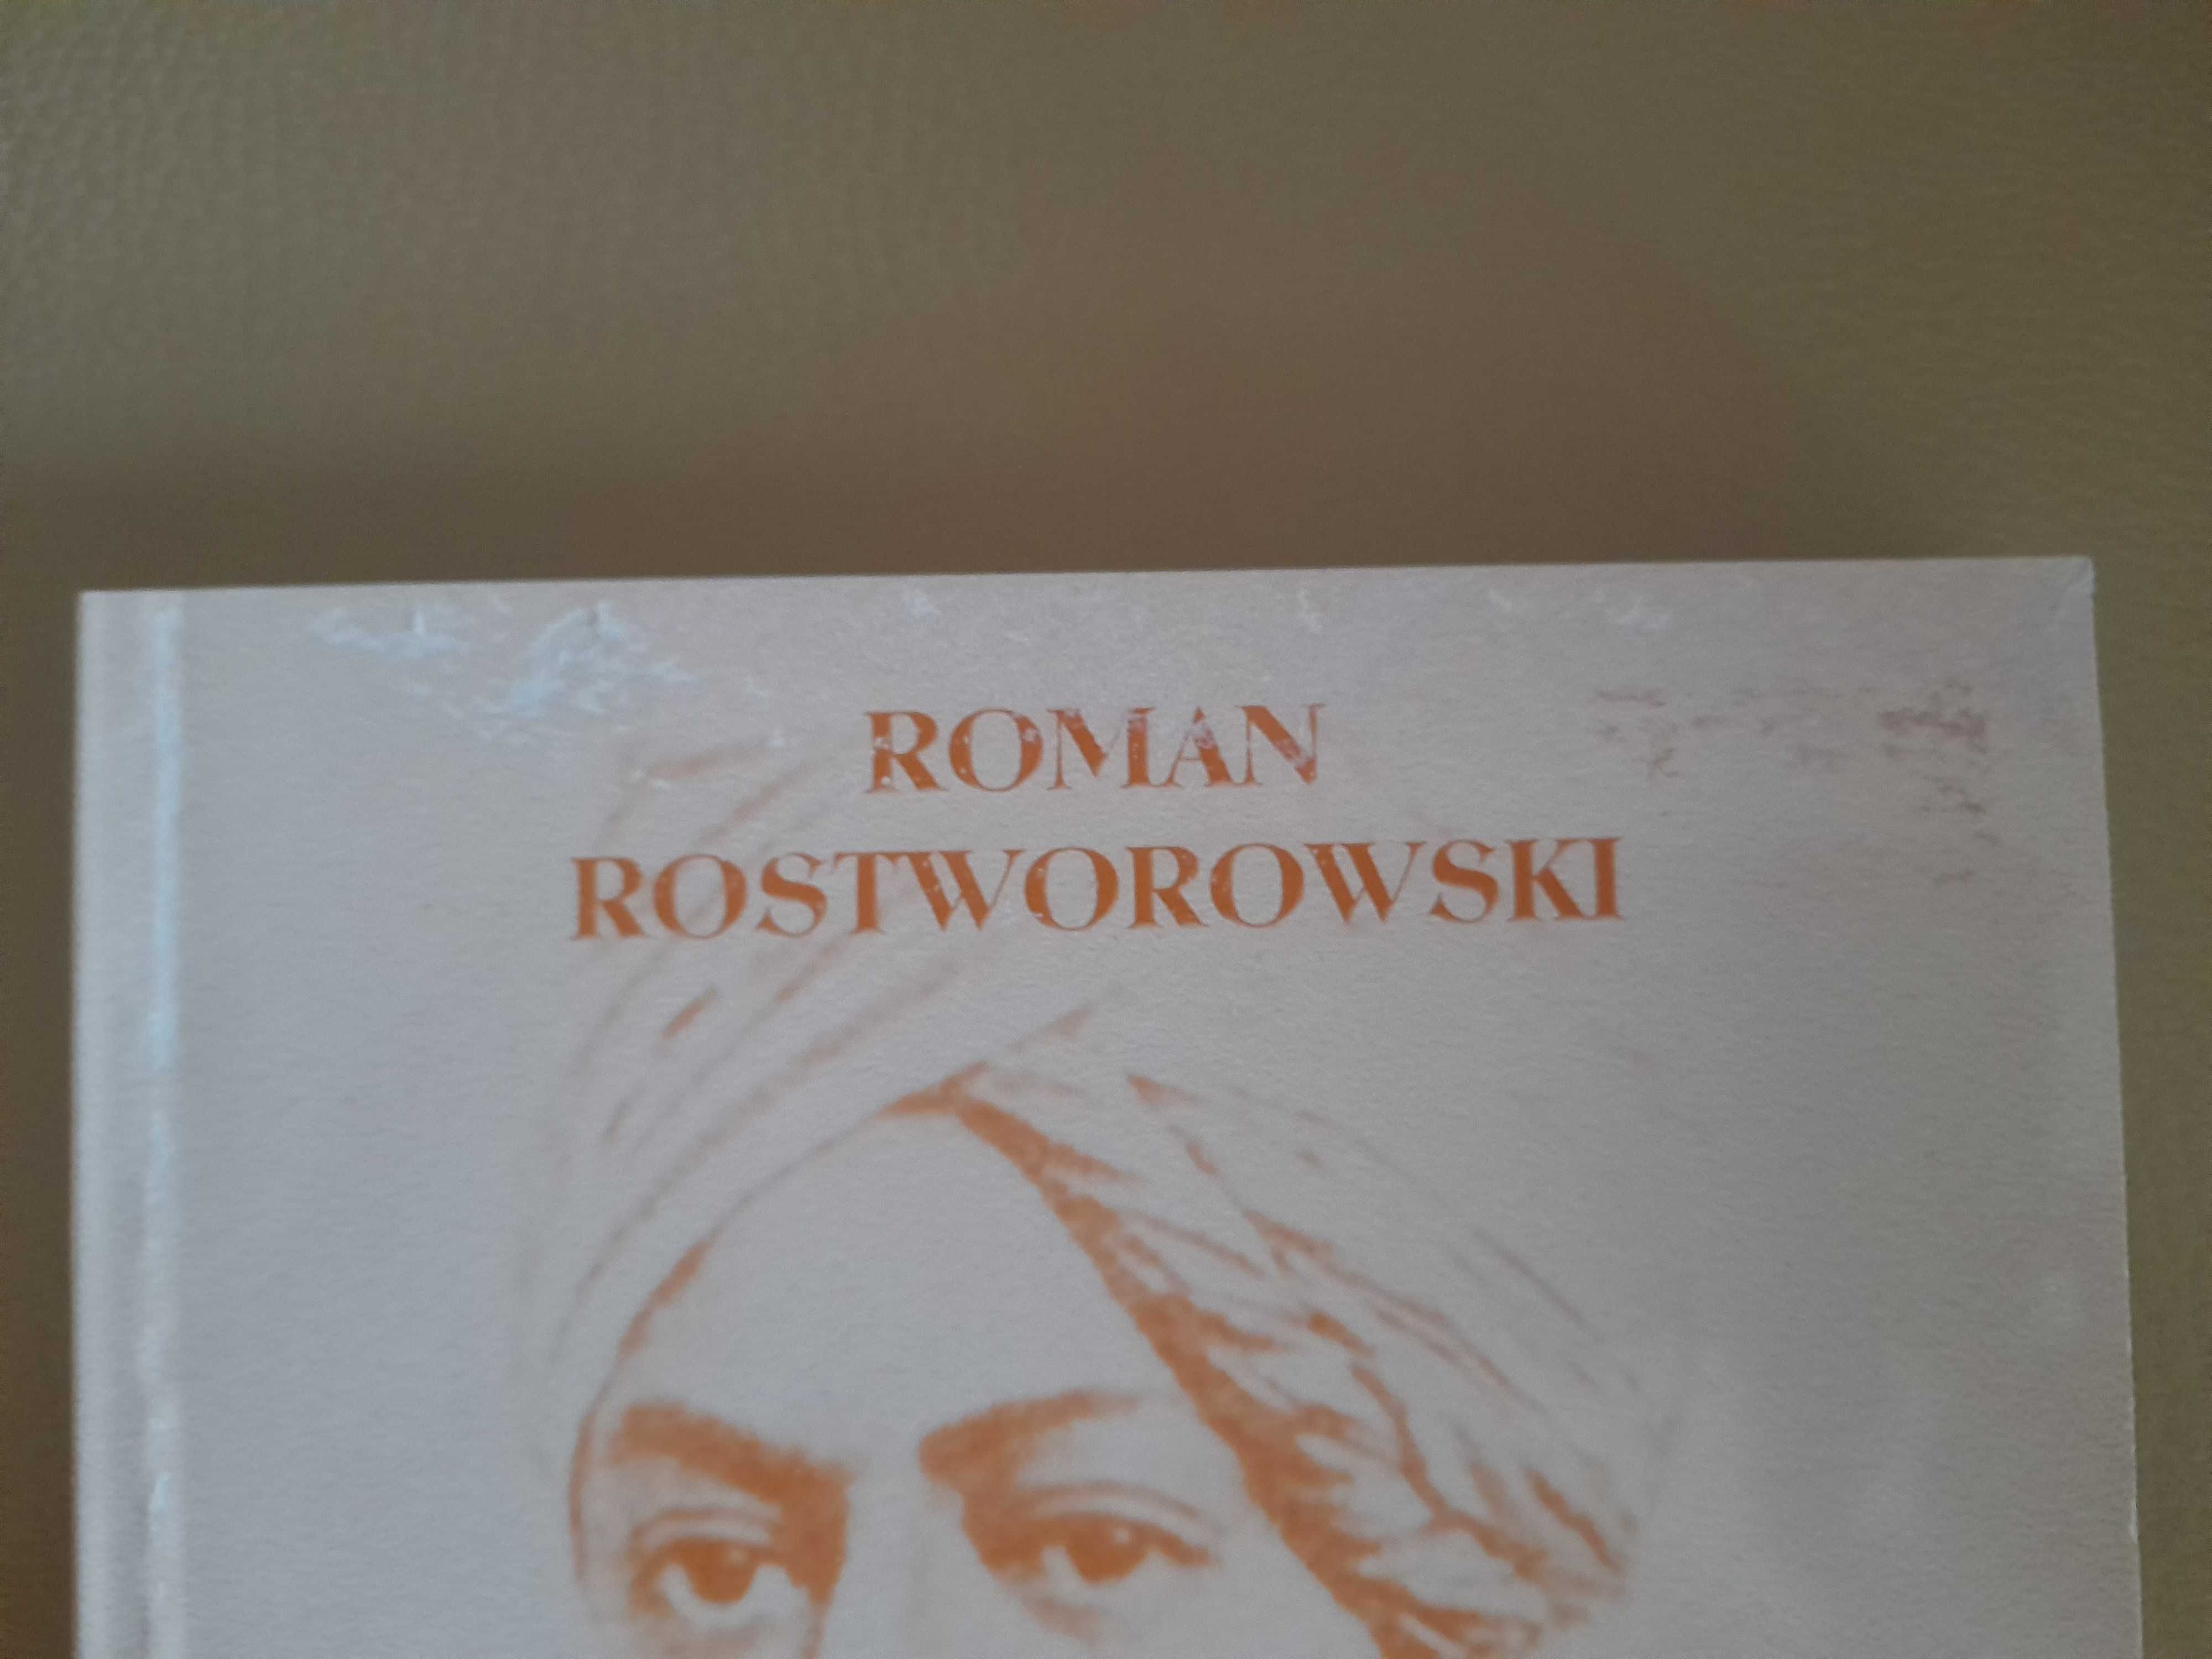 Roman Rostworowski "Poezje hinduskie i inne"